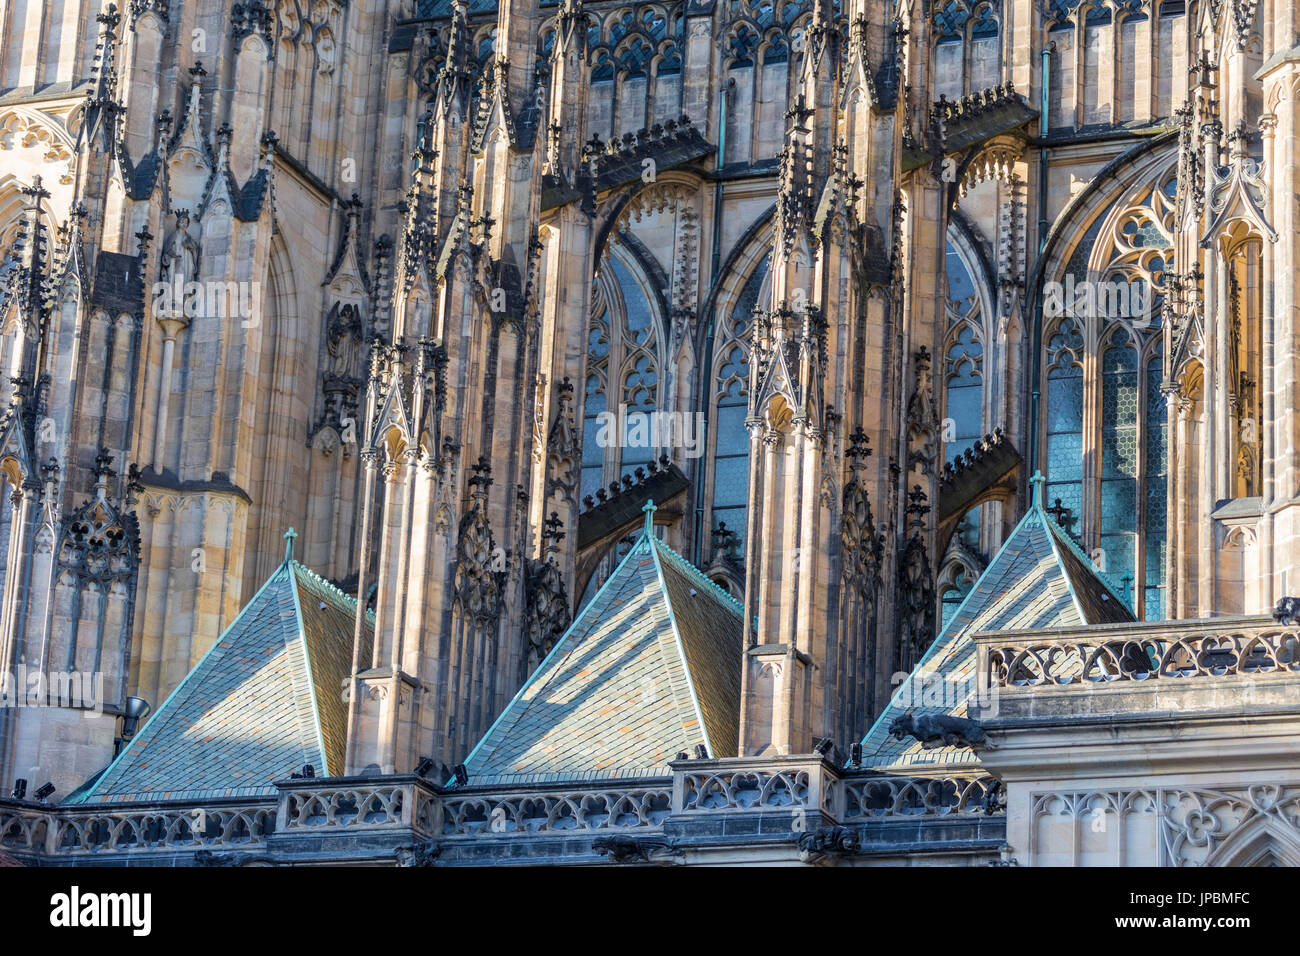 Details zu den Marmor Türme der gotischen Kathedrale von Saint Vitus alten Stadt Square Prag Tschechische Republik Europa Stockfoto